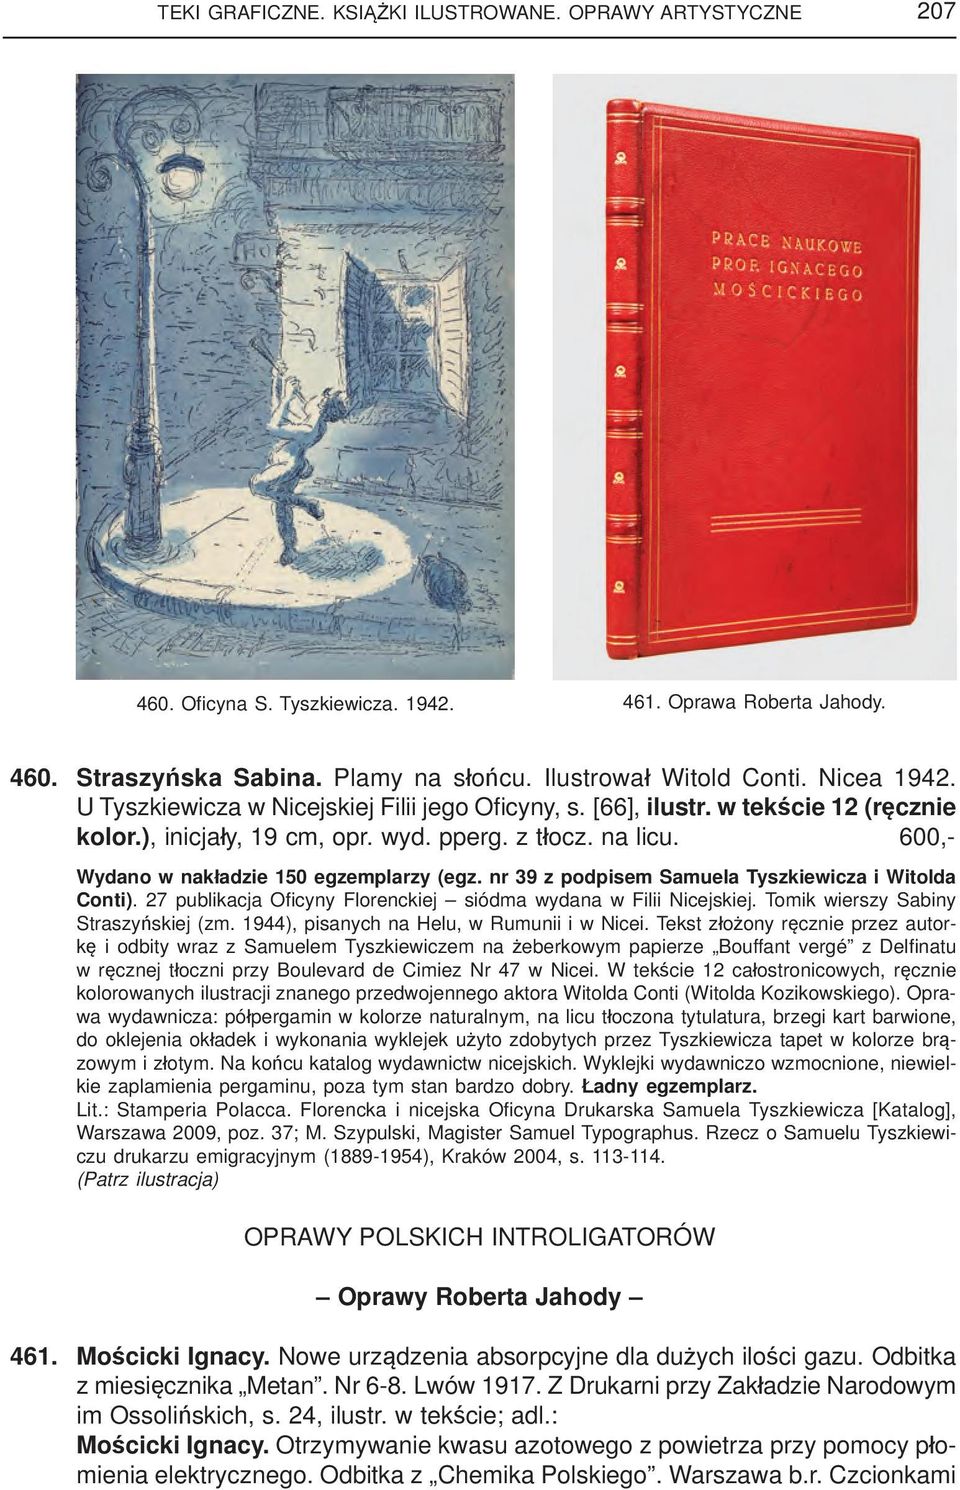 600,- Wydano w nakładzie 150 egzemplarzy (egz. nr 39 z podpisem Samuela Tyszkiewicza i Witolda Conti). 27 publikacja Ofi cyny Florenckiej siódma wydana w Filii Nicejskiej.